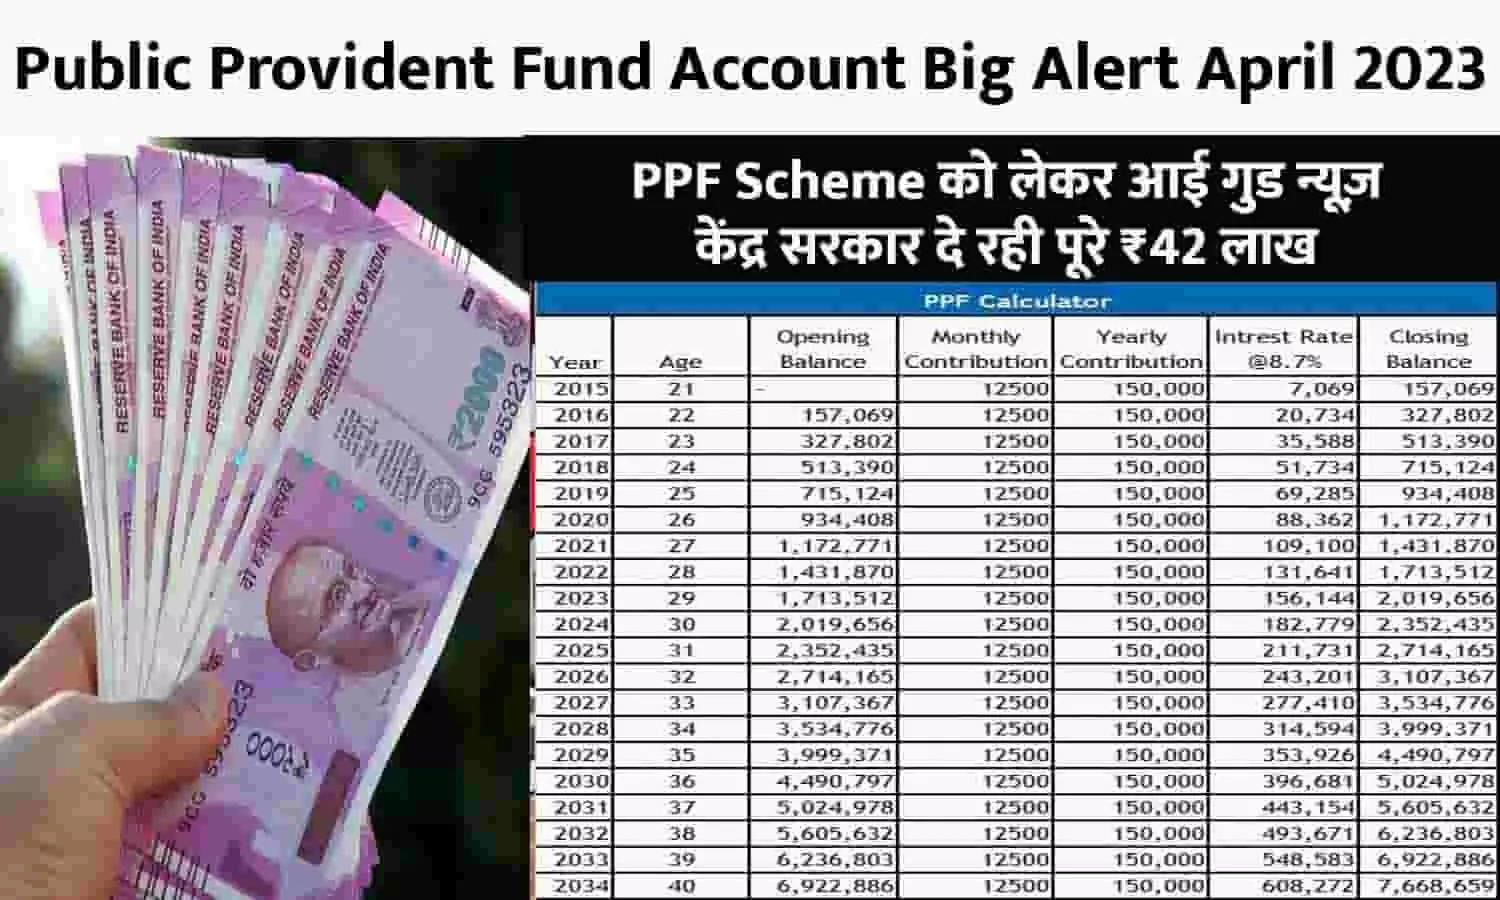 Public Provident Fund Account Big Alert April 2023: PPF Scheme को लेकर आई गुड न्यूज़, केंद्र सरकार दे रही पूरे ₹42 लाख, अकॉउंट में आएगा पैसा